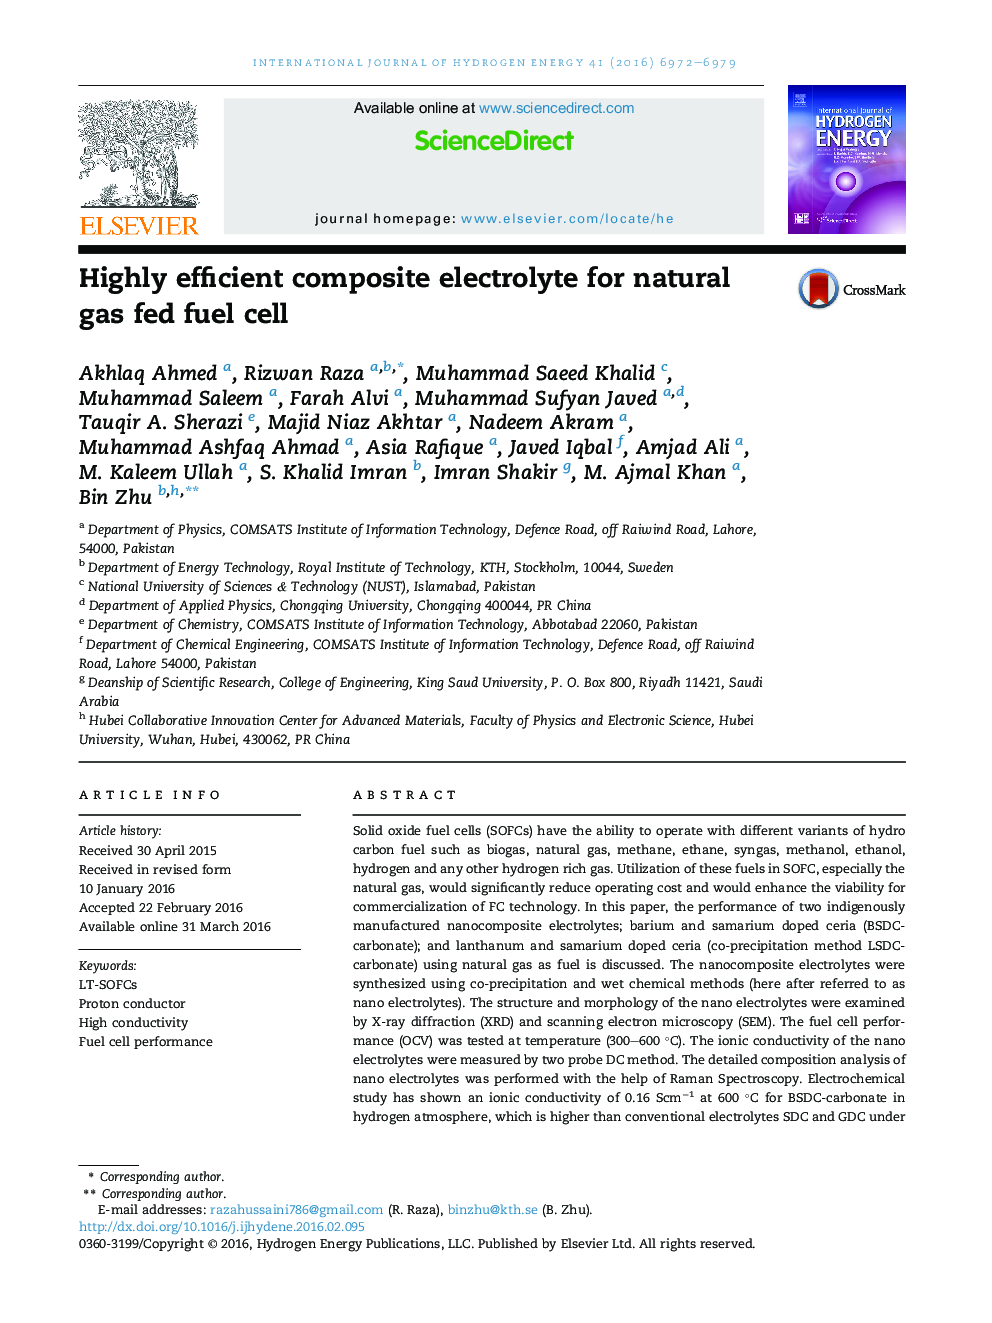 الکترولیت کامپوزیت بسیار کارآمد برای سلول سوختی با گاز طبیعی 